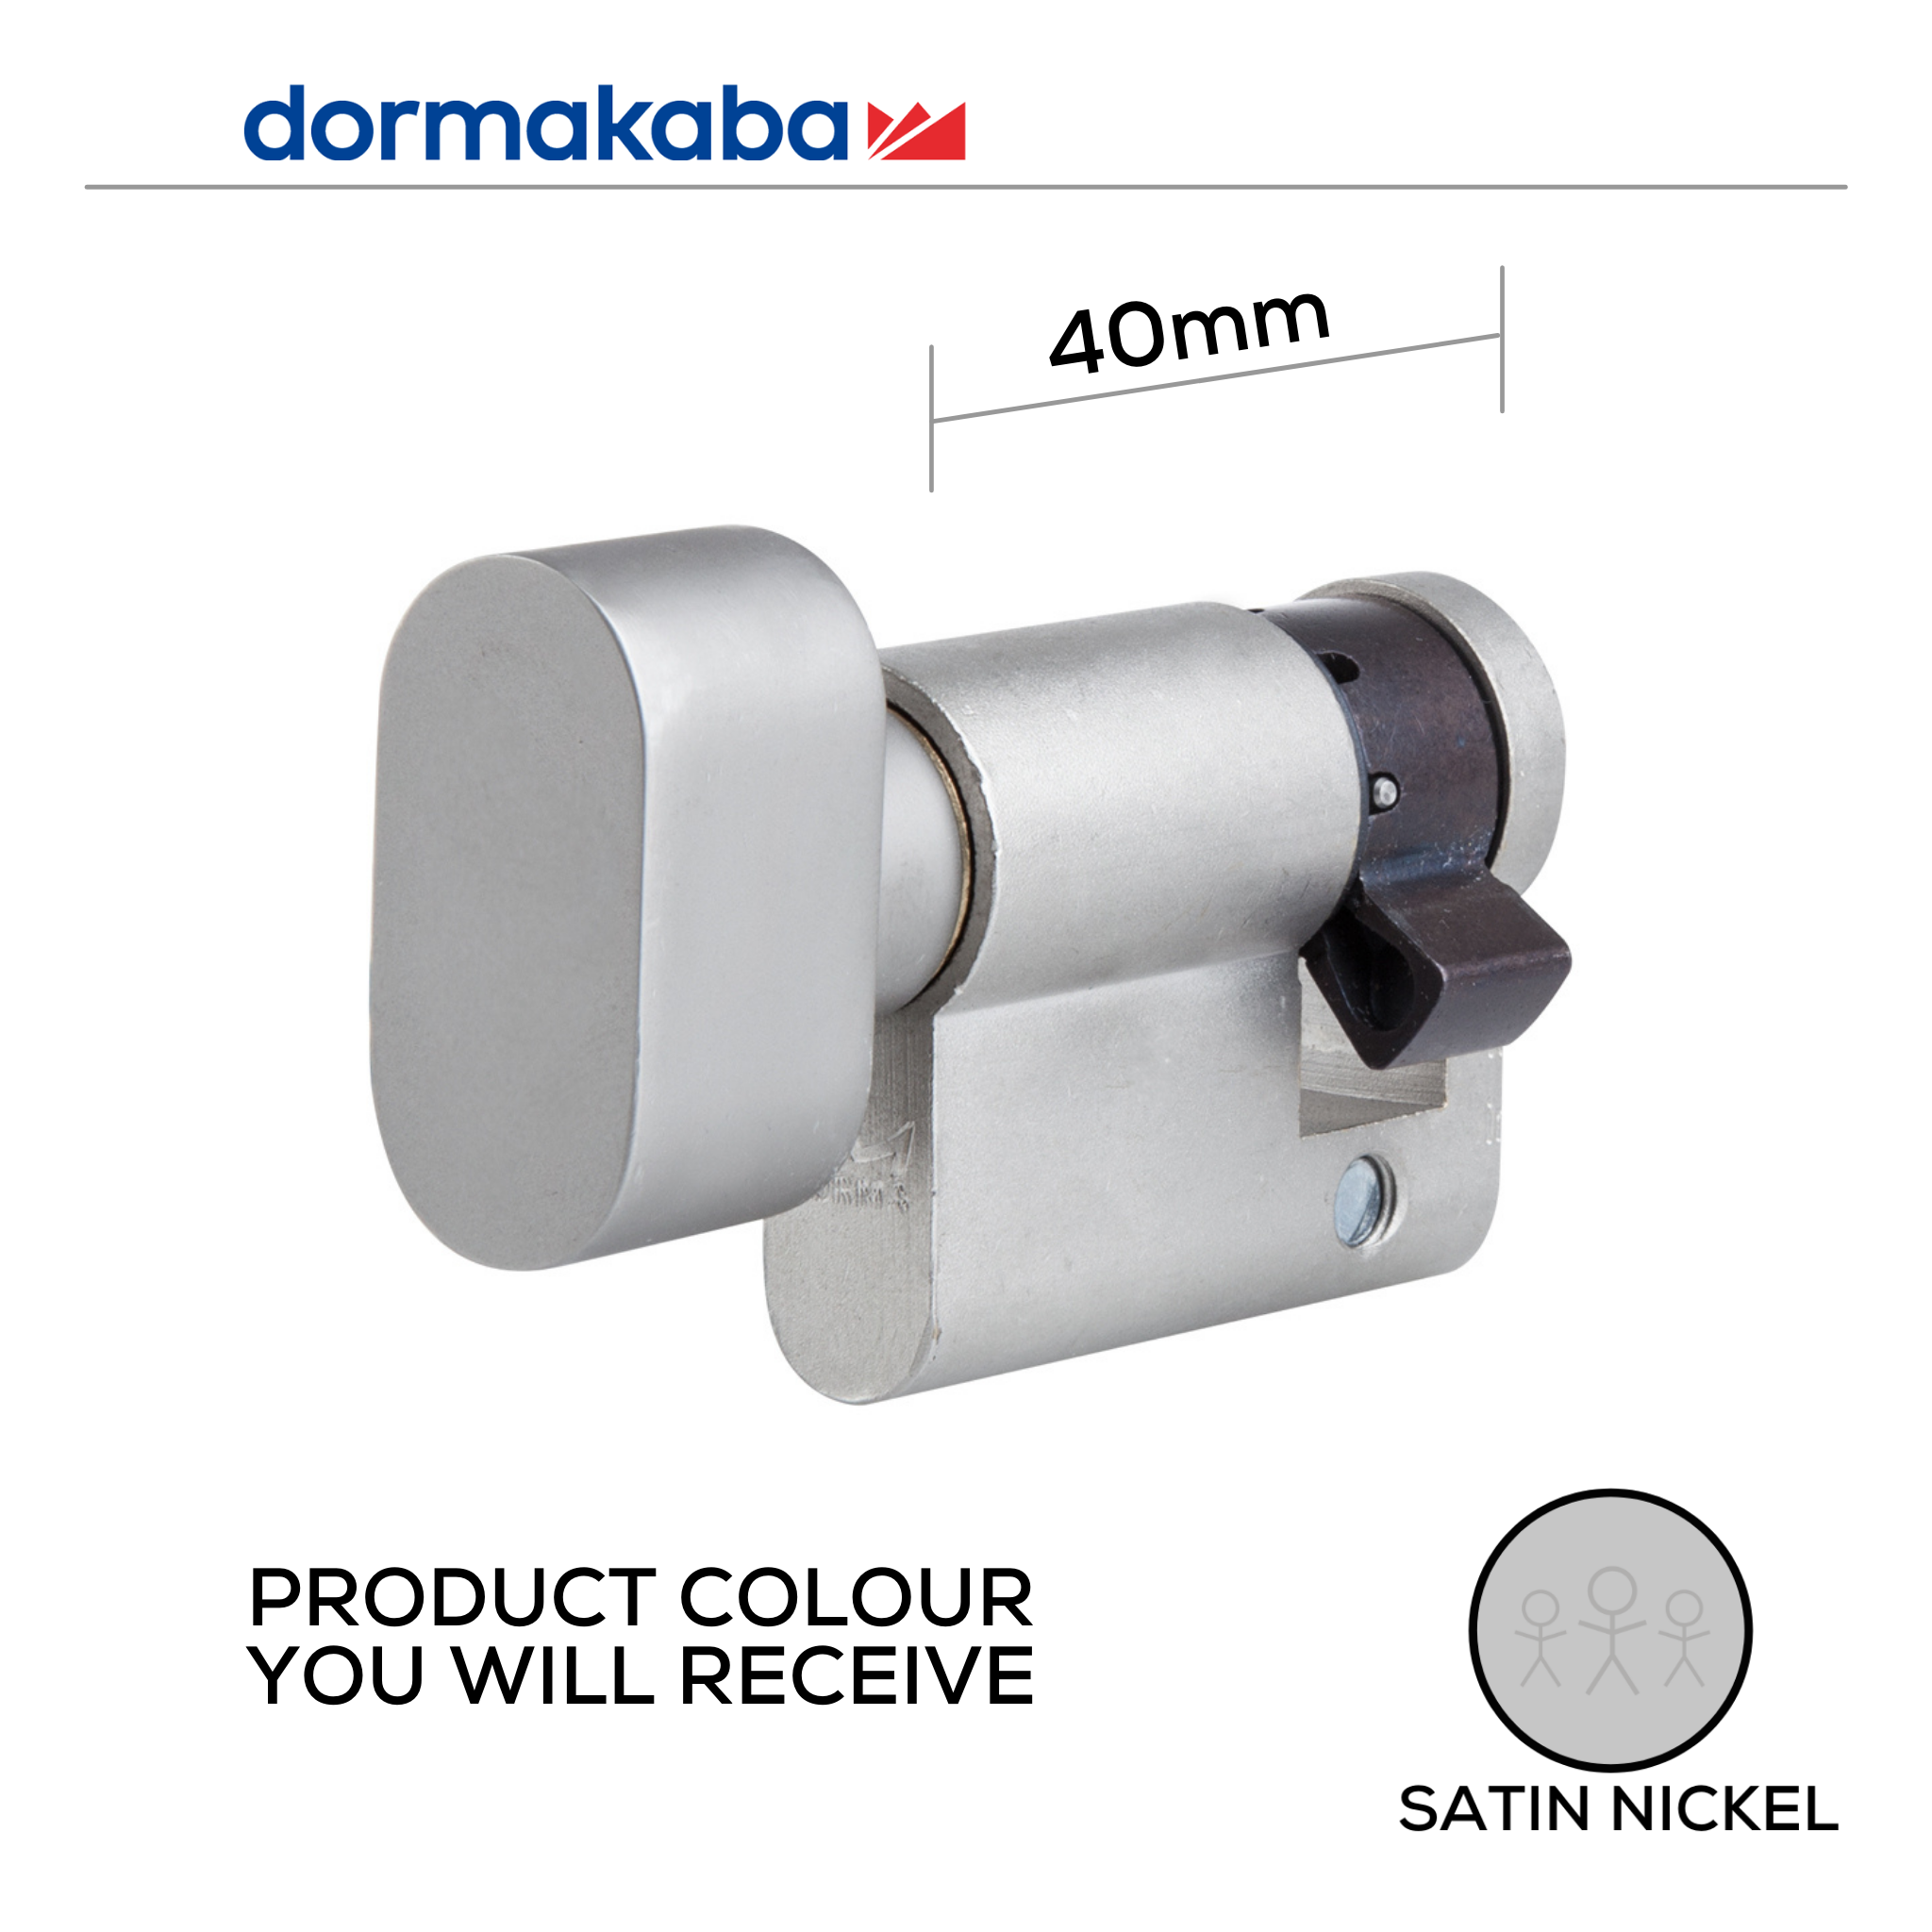 DHK004201, 40mm - 30/10, Half (Single Cylinder), Thumbturn, Satin Nickel, DORMAKABA